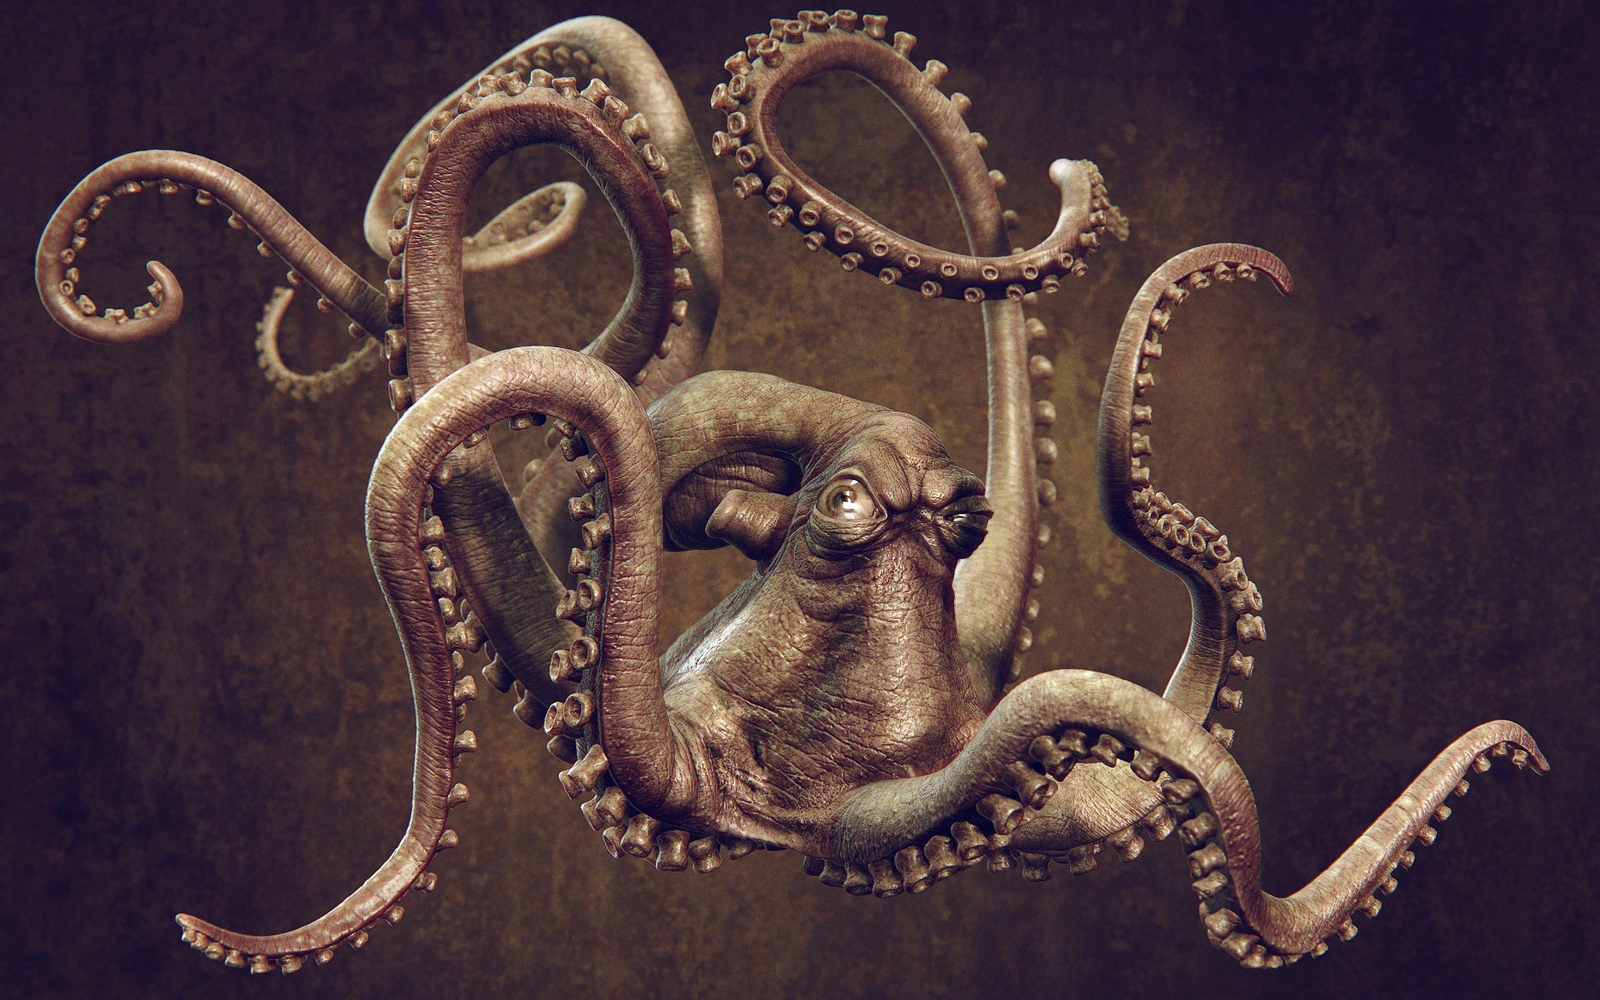 Animal Octopus Wallpaper